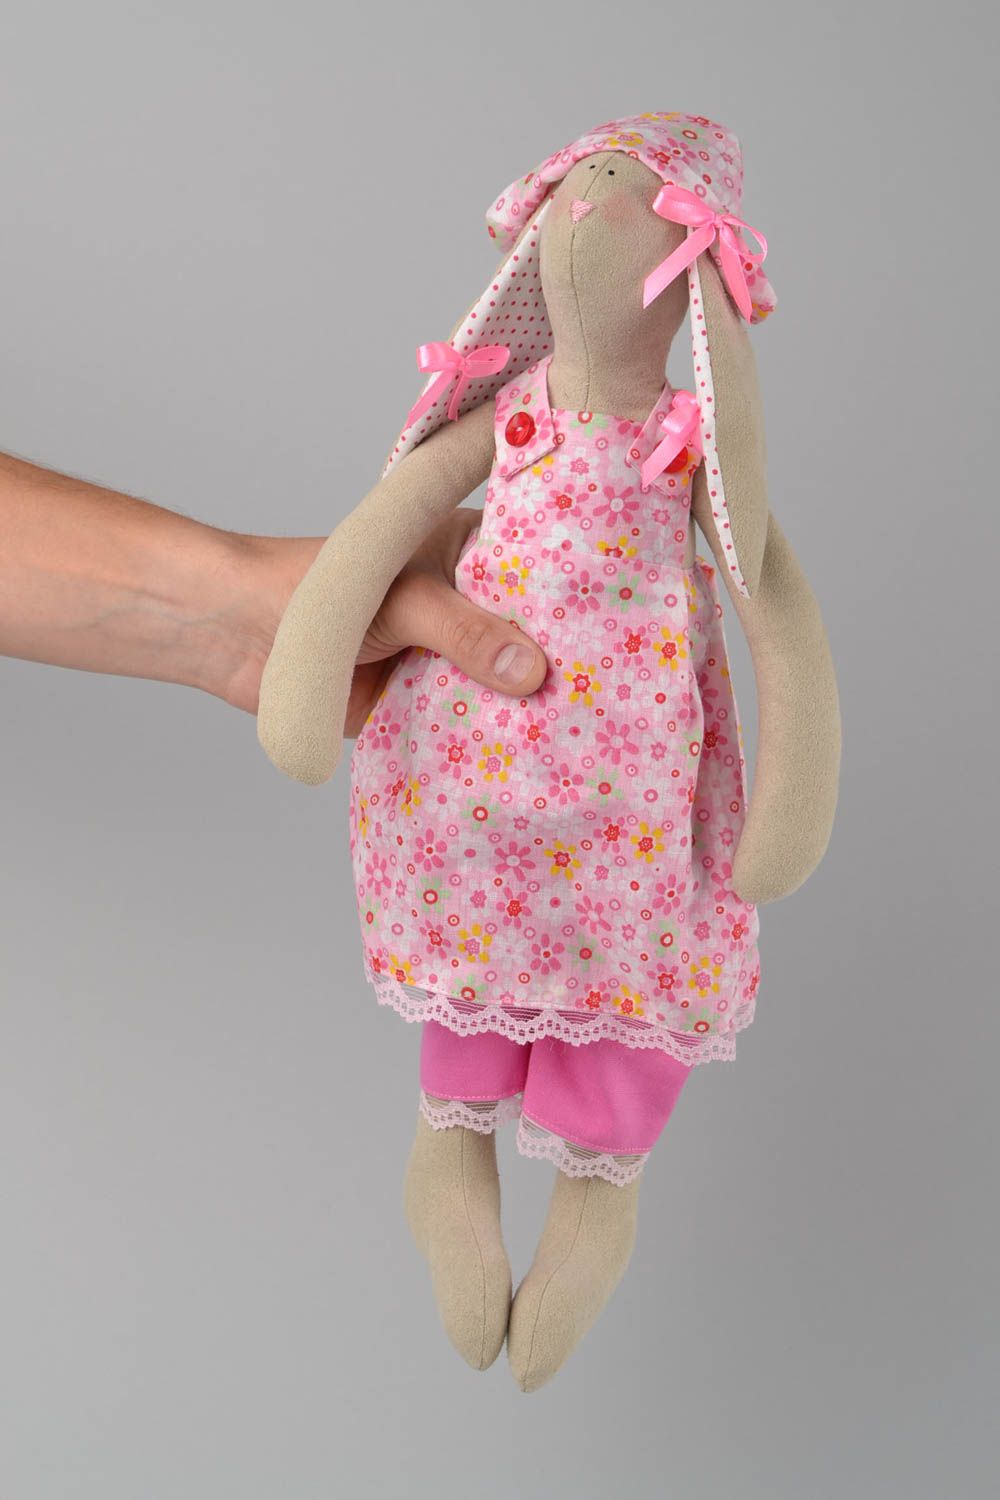 Мягкая игрушка зайчиха из ткани ручной работы в розовом наряде красивая для дома фото 2